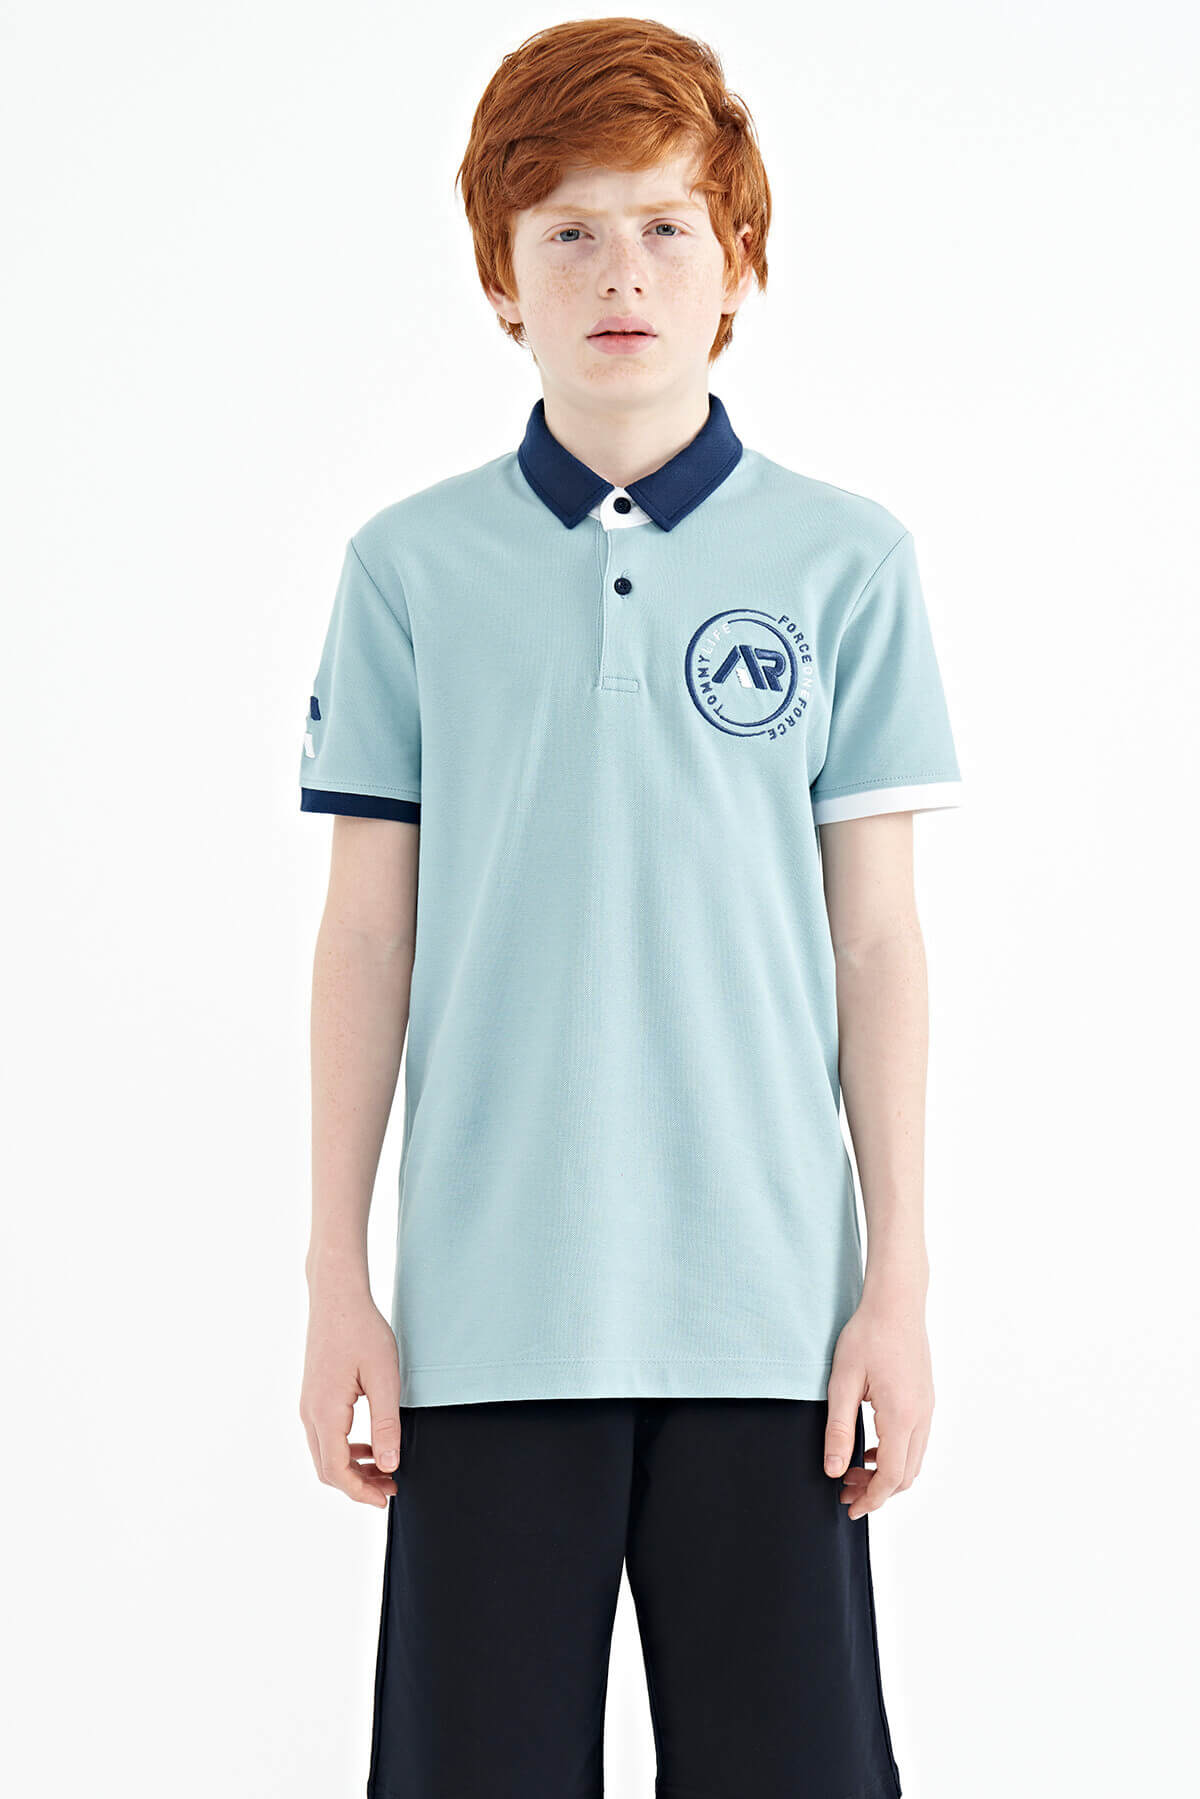 Açık Mavi Kol Ucu Renkli Logo Nakışlı Standart Kalıp Polo Yaka Erkek Çocuk T-Shirt